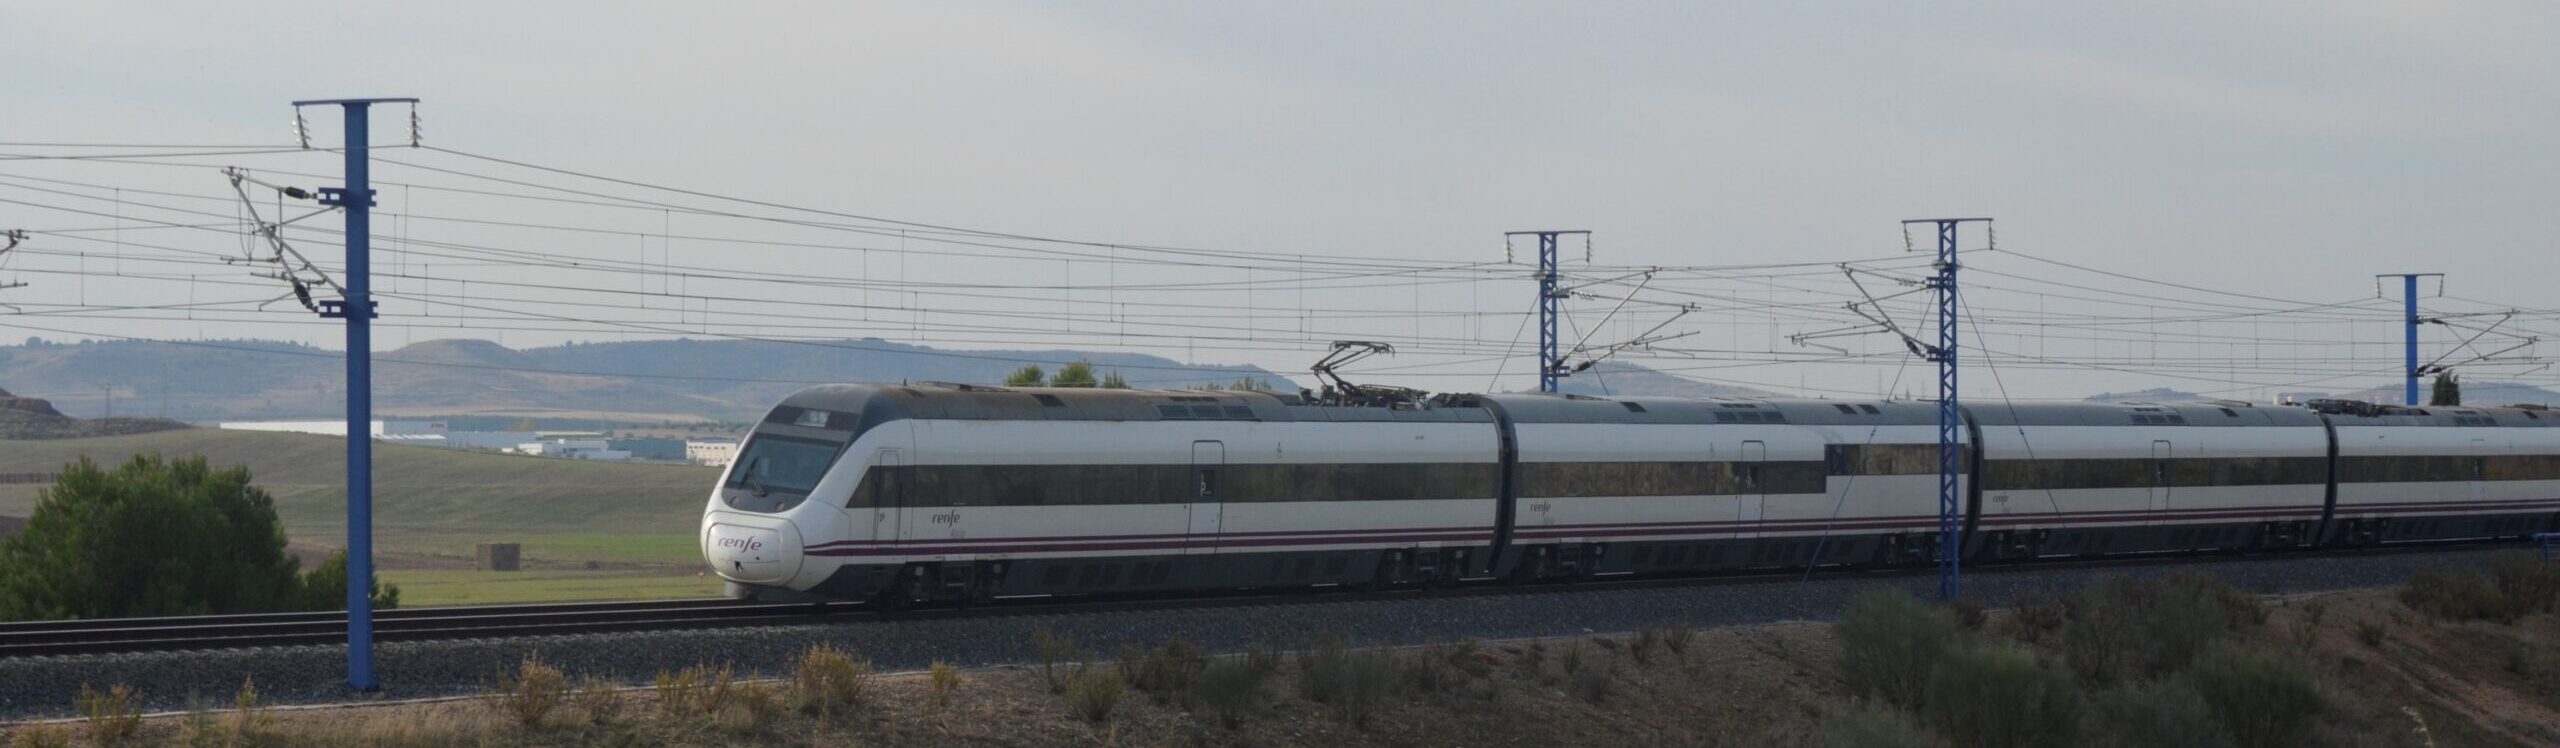 Ferrocarril00138b